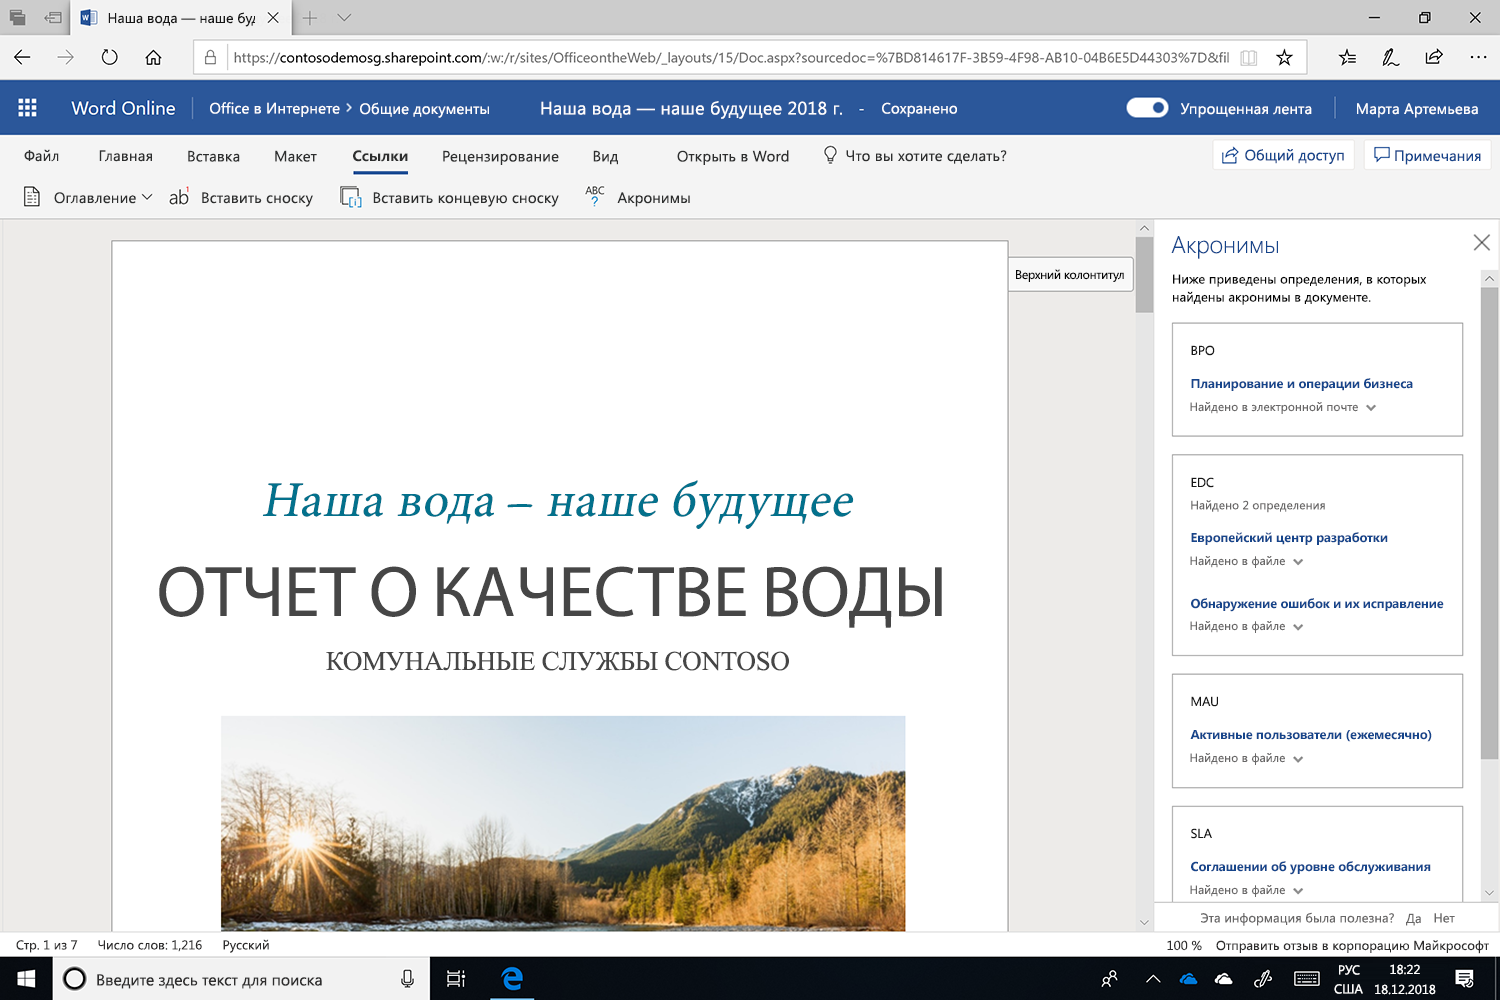 Снимок экрана с открытой областью "Акронимы" в Microsoft Word.